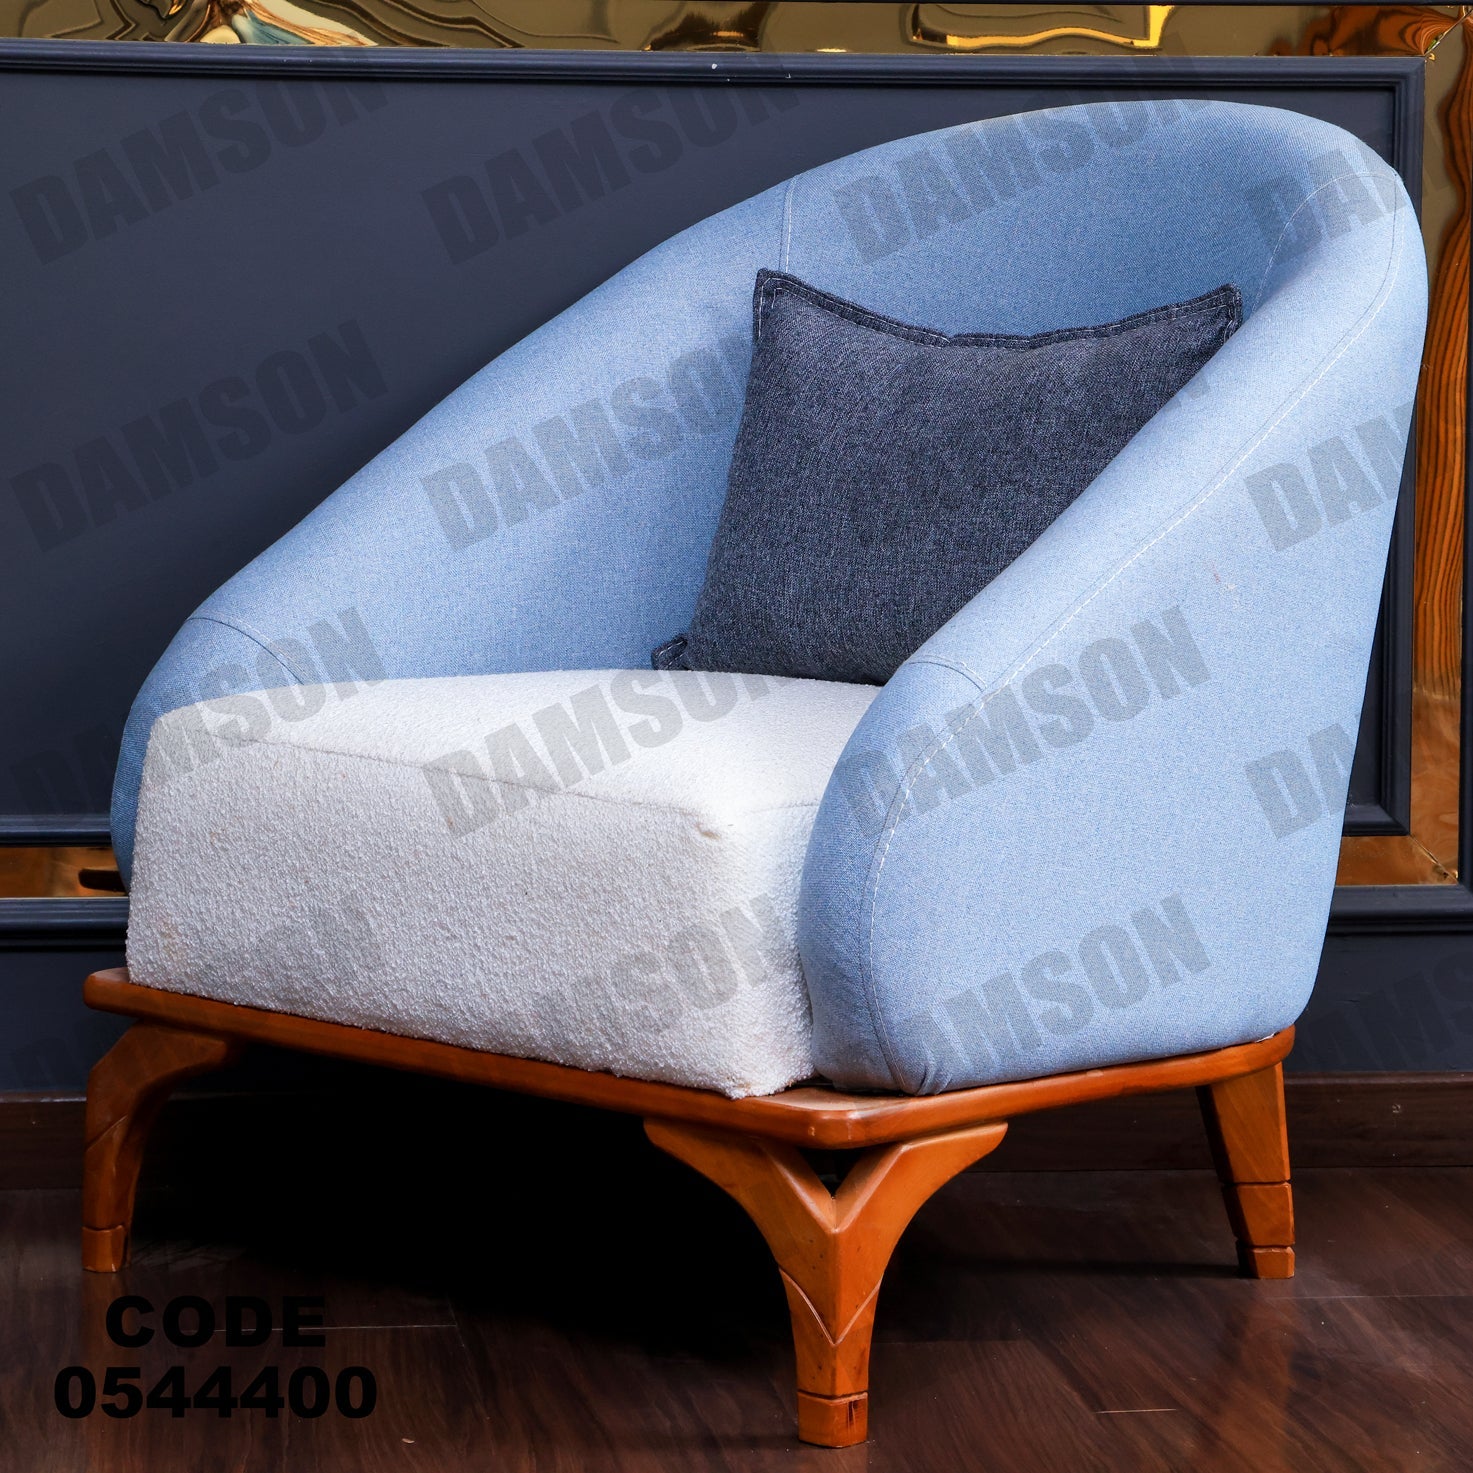 فوتية 1-444 - Damson Furnitureفوتية 1-444